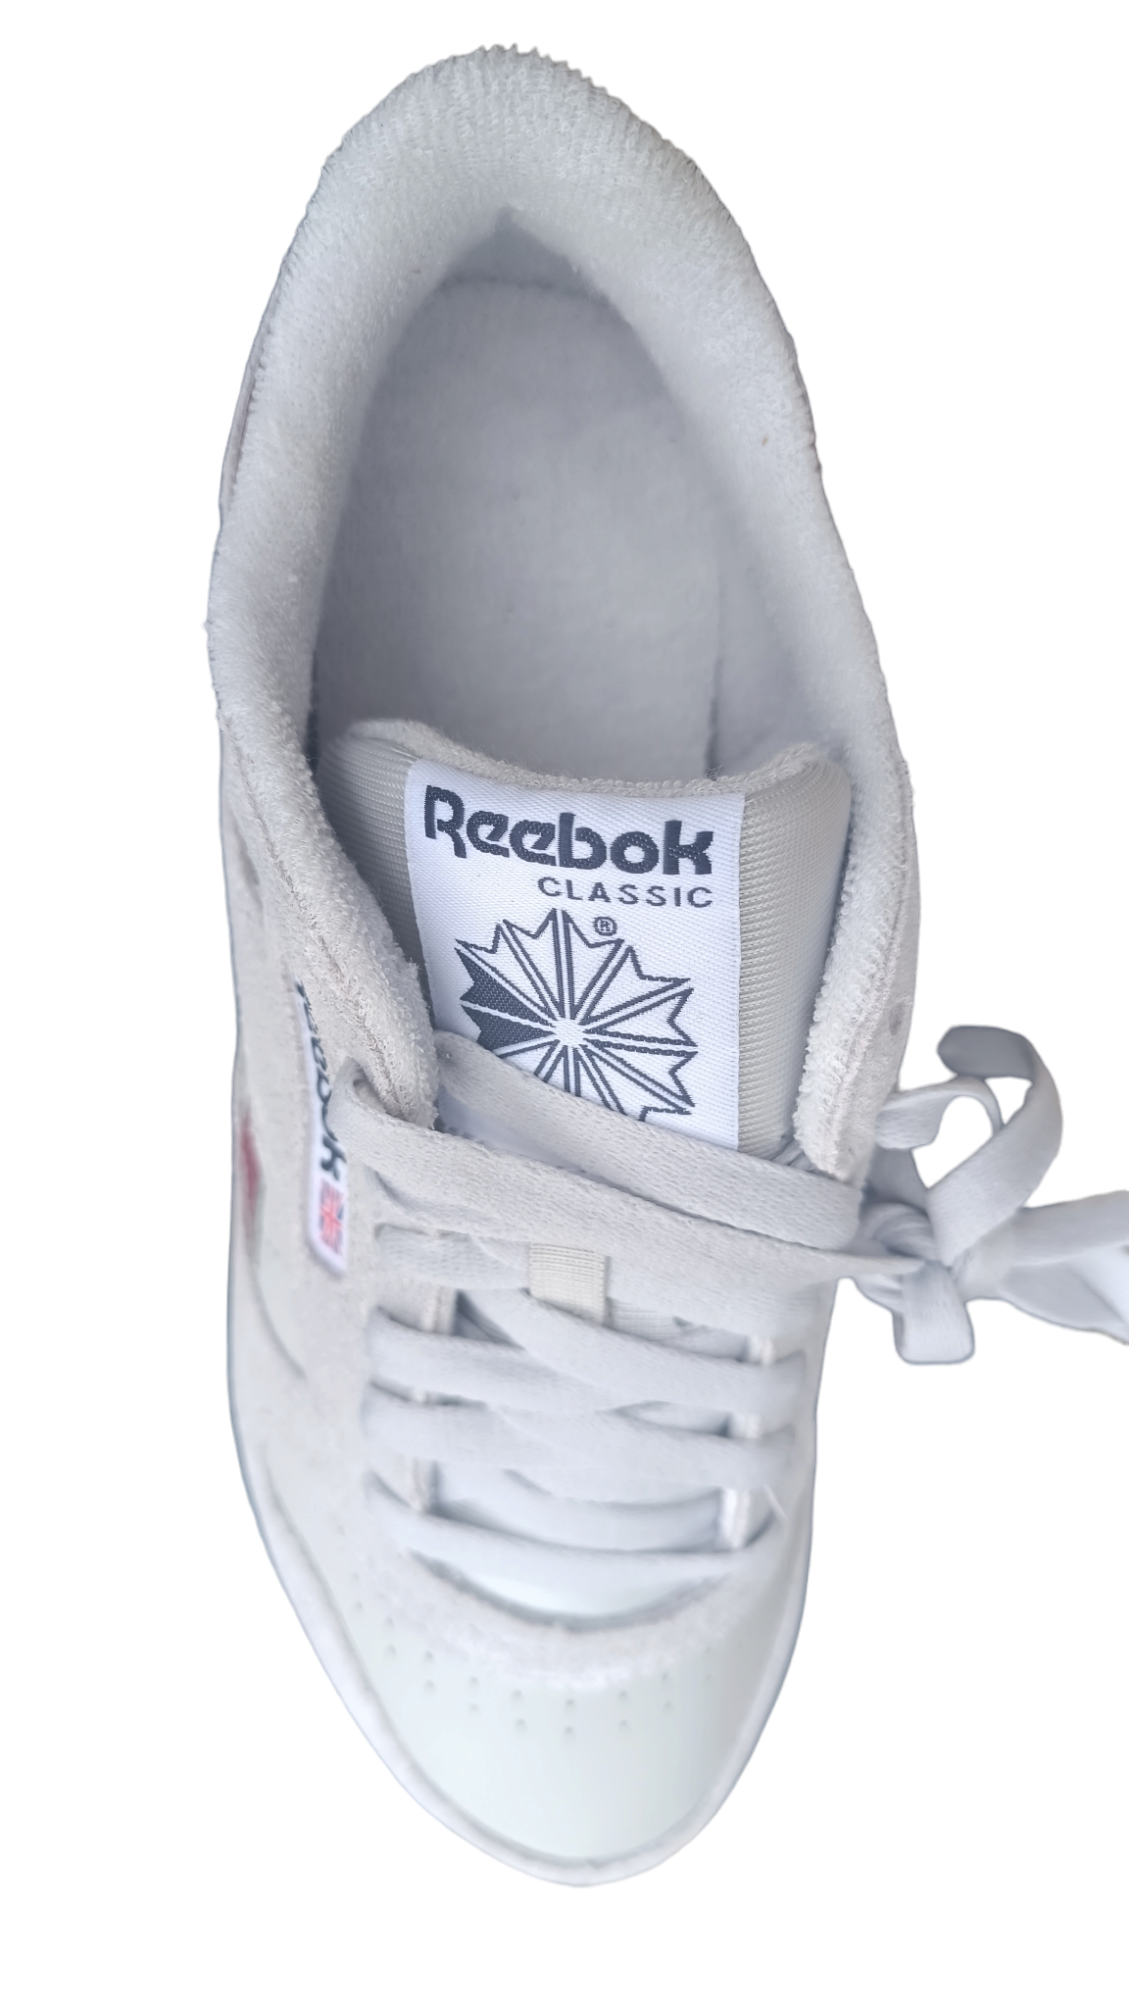 Destockage -60% baskets sneakers Reebok classic cuir véritable durabilité forte homme 39 40